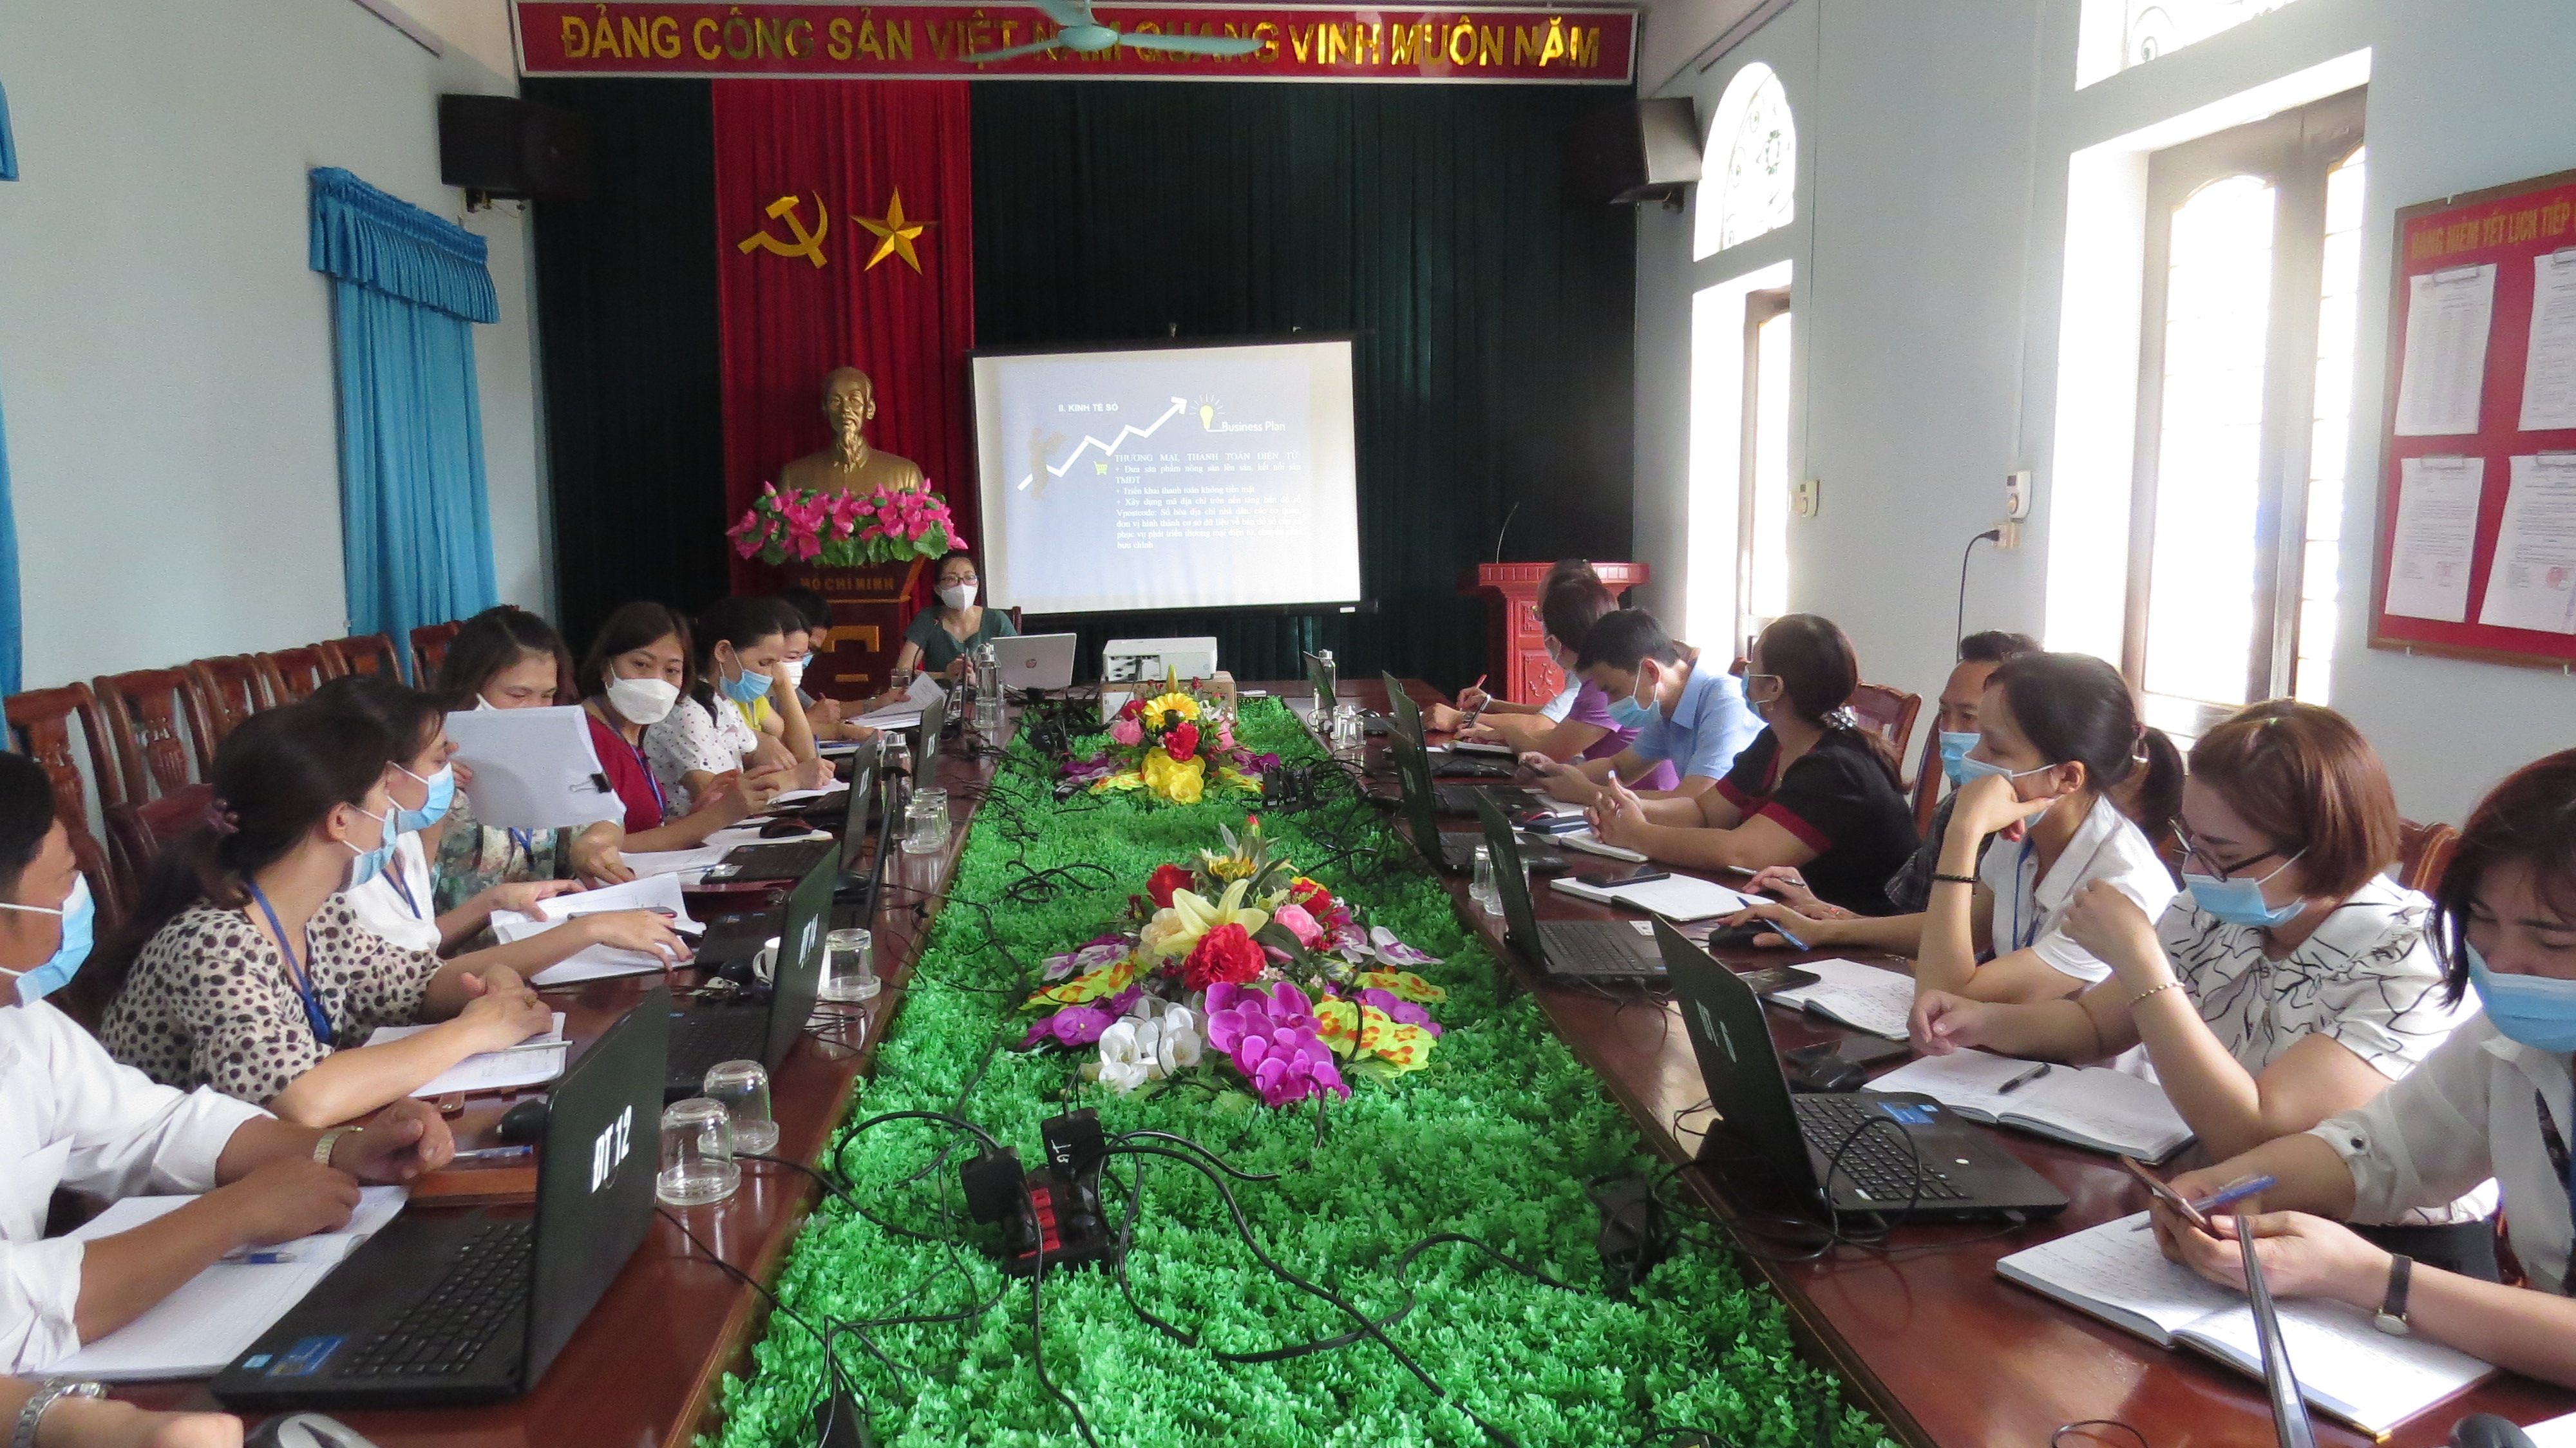 Phường Bắc Sơn, thành phố Tam Điệp hoàn thành tập huấn nghiệp vụ thực hiện Chuyển đổi số